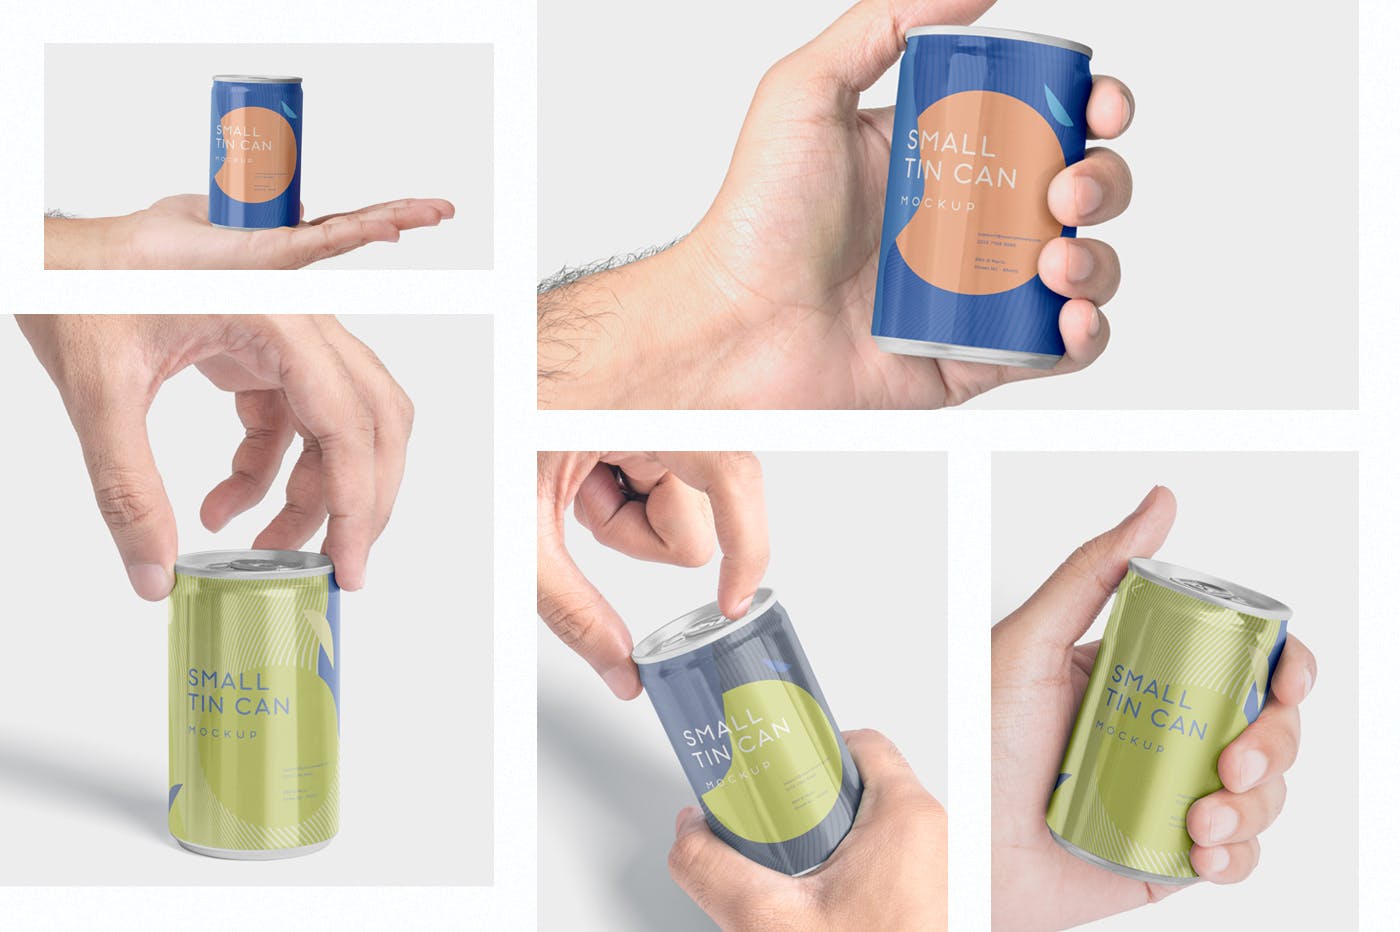 小型饮料易拉罐外观设计预览样机 5 Small Tin Can Mockups插图(1)